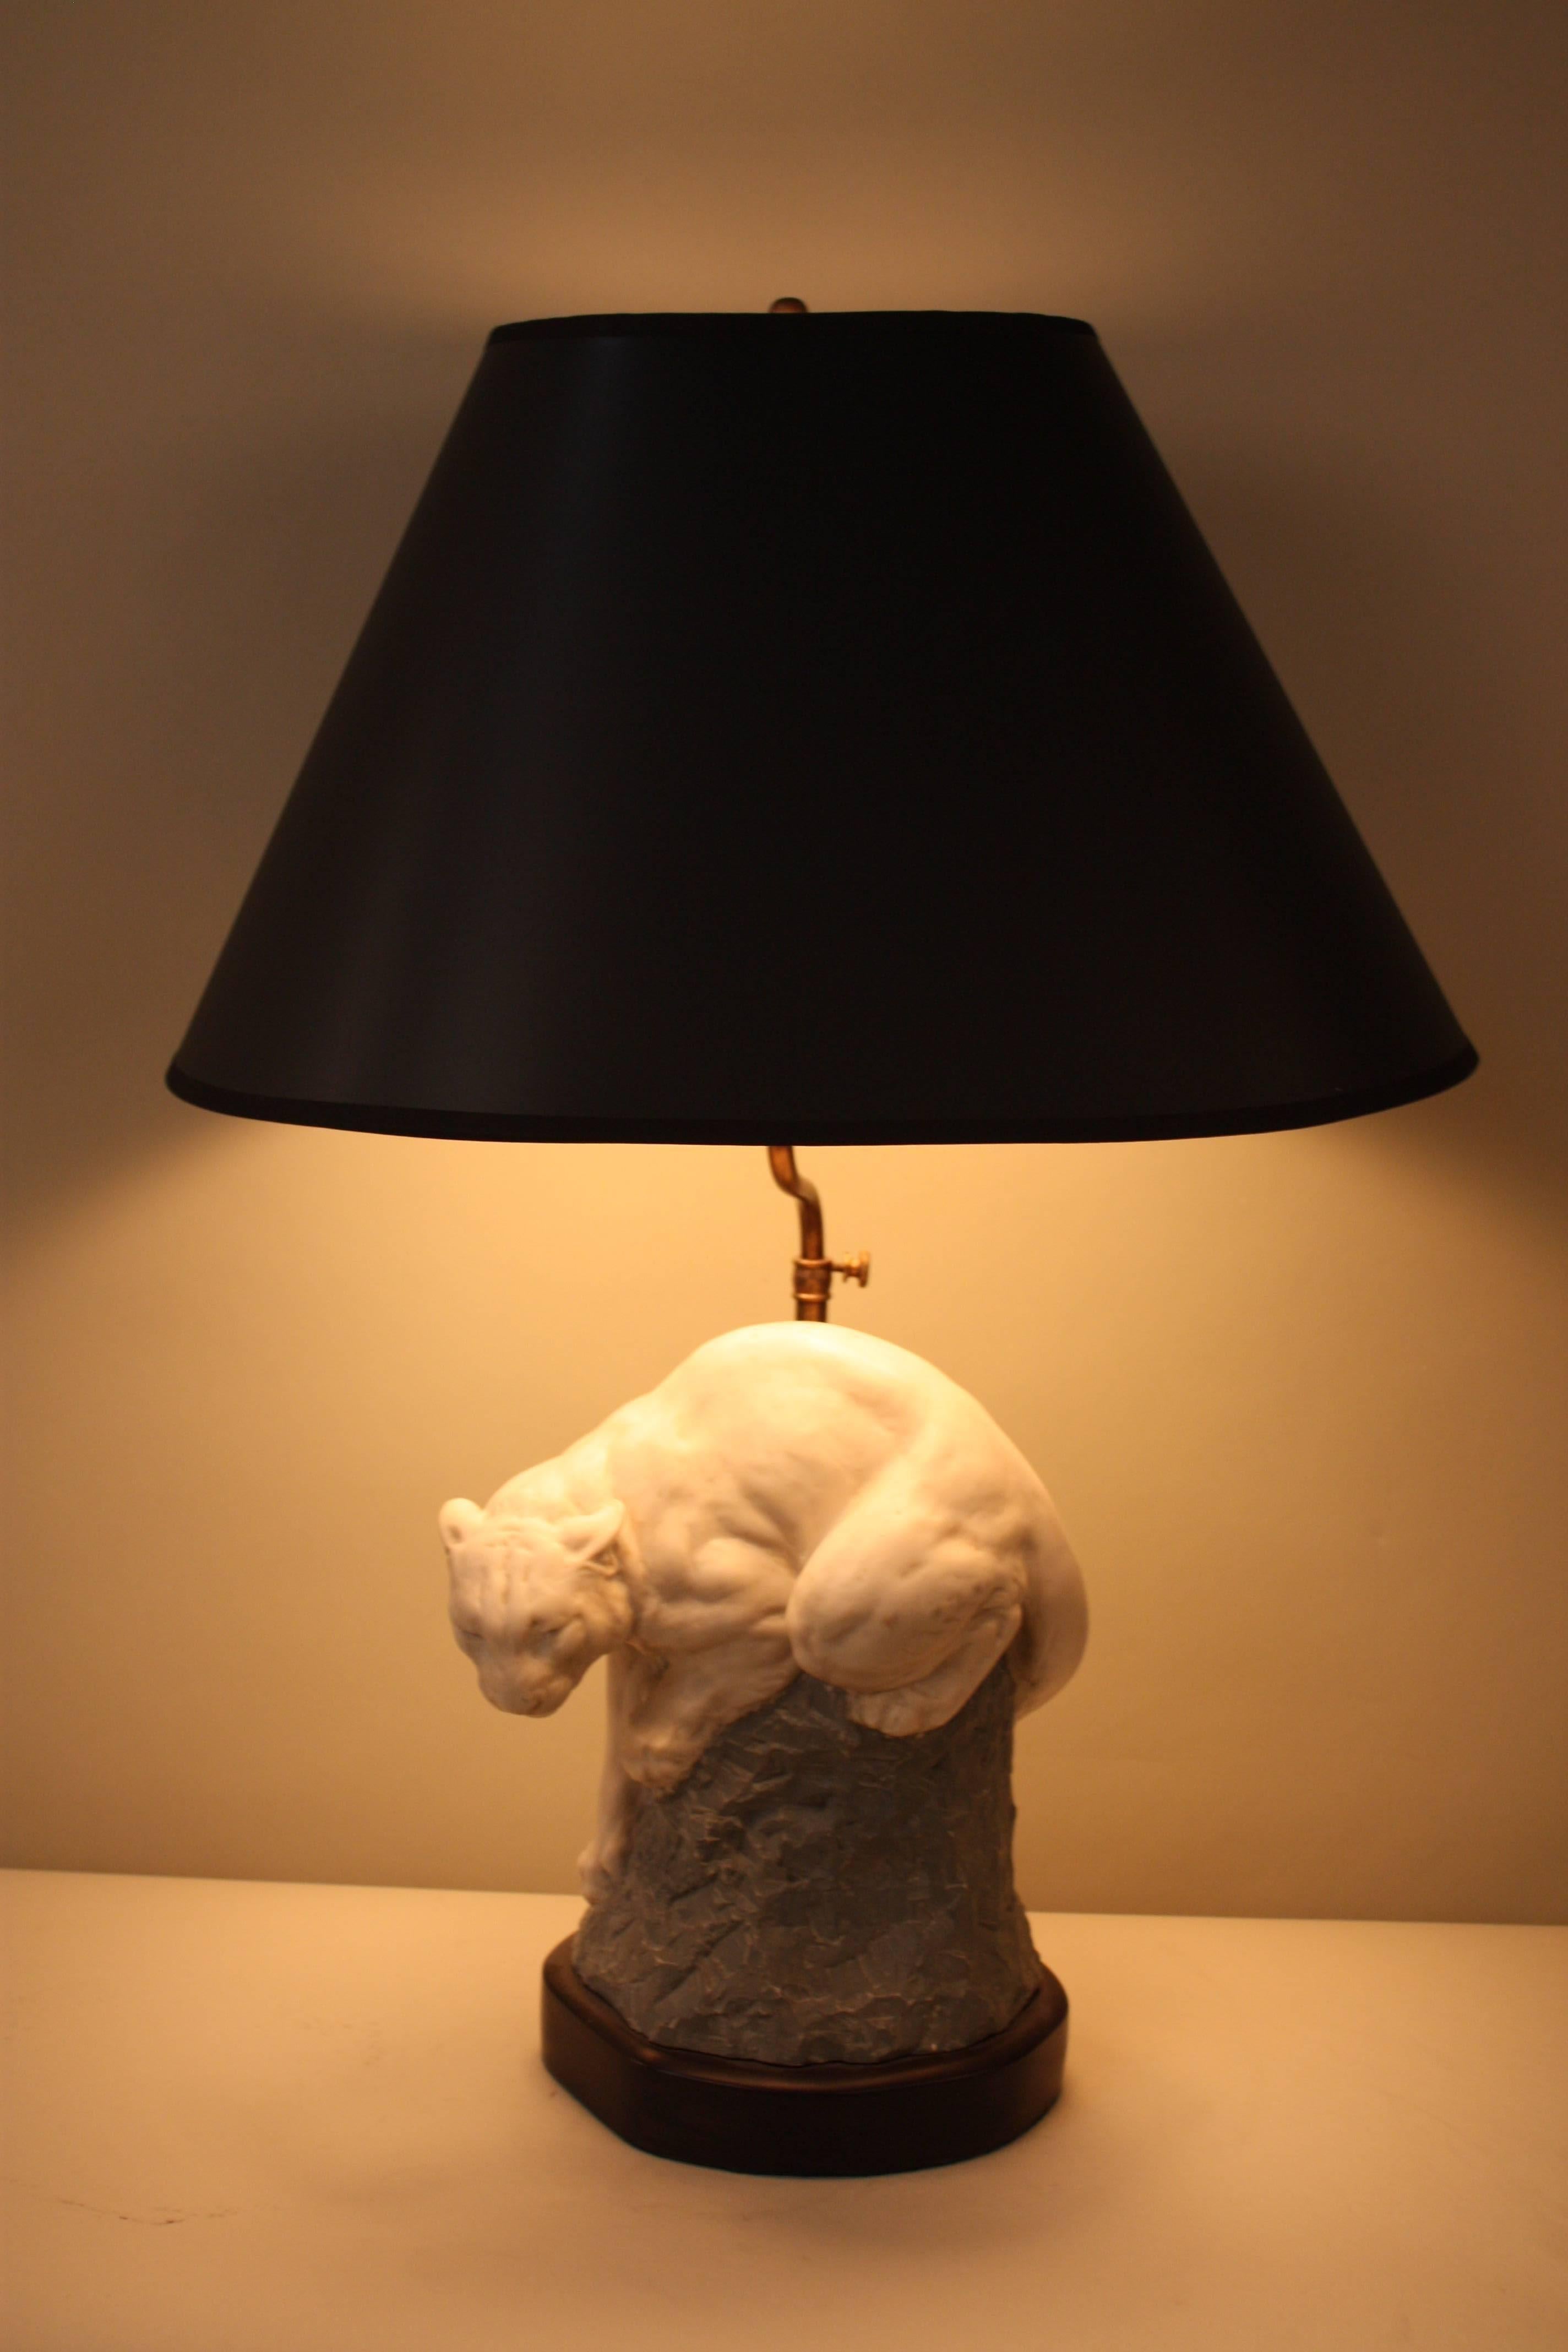 cougar lamp